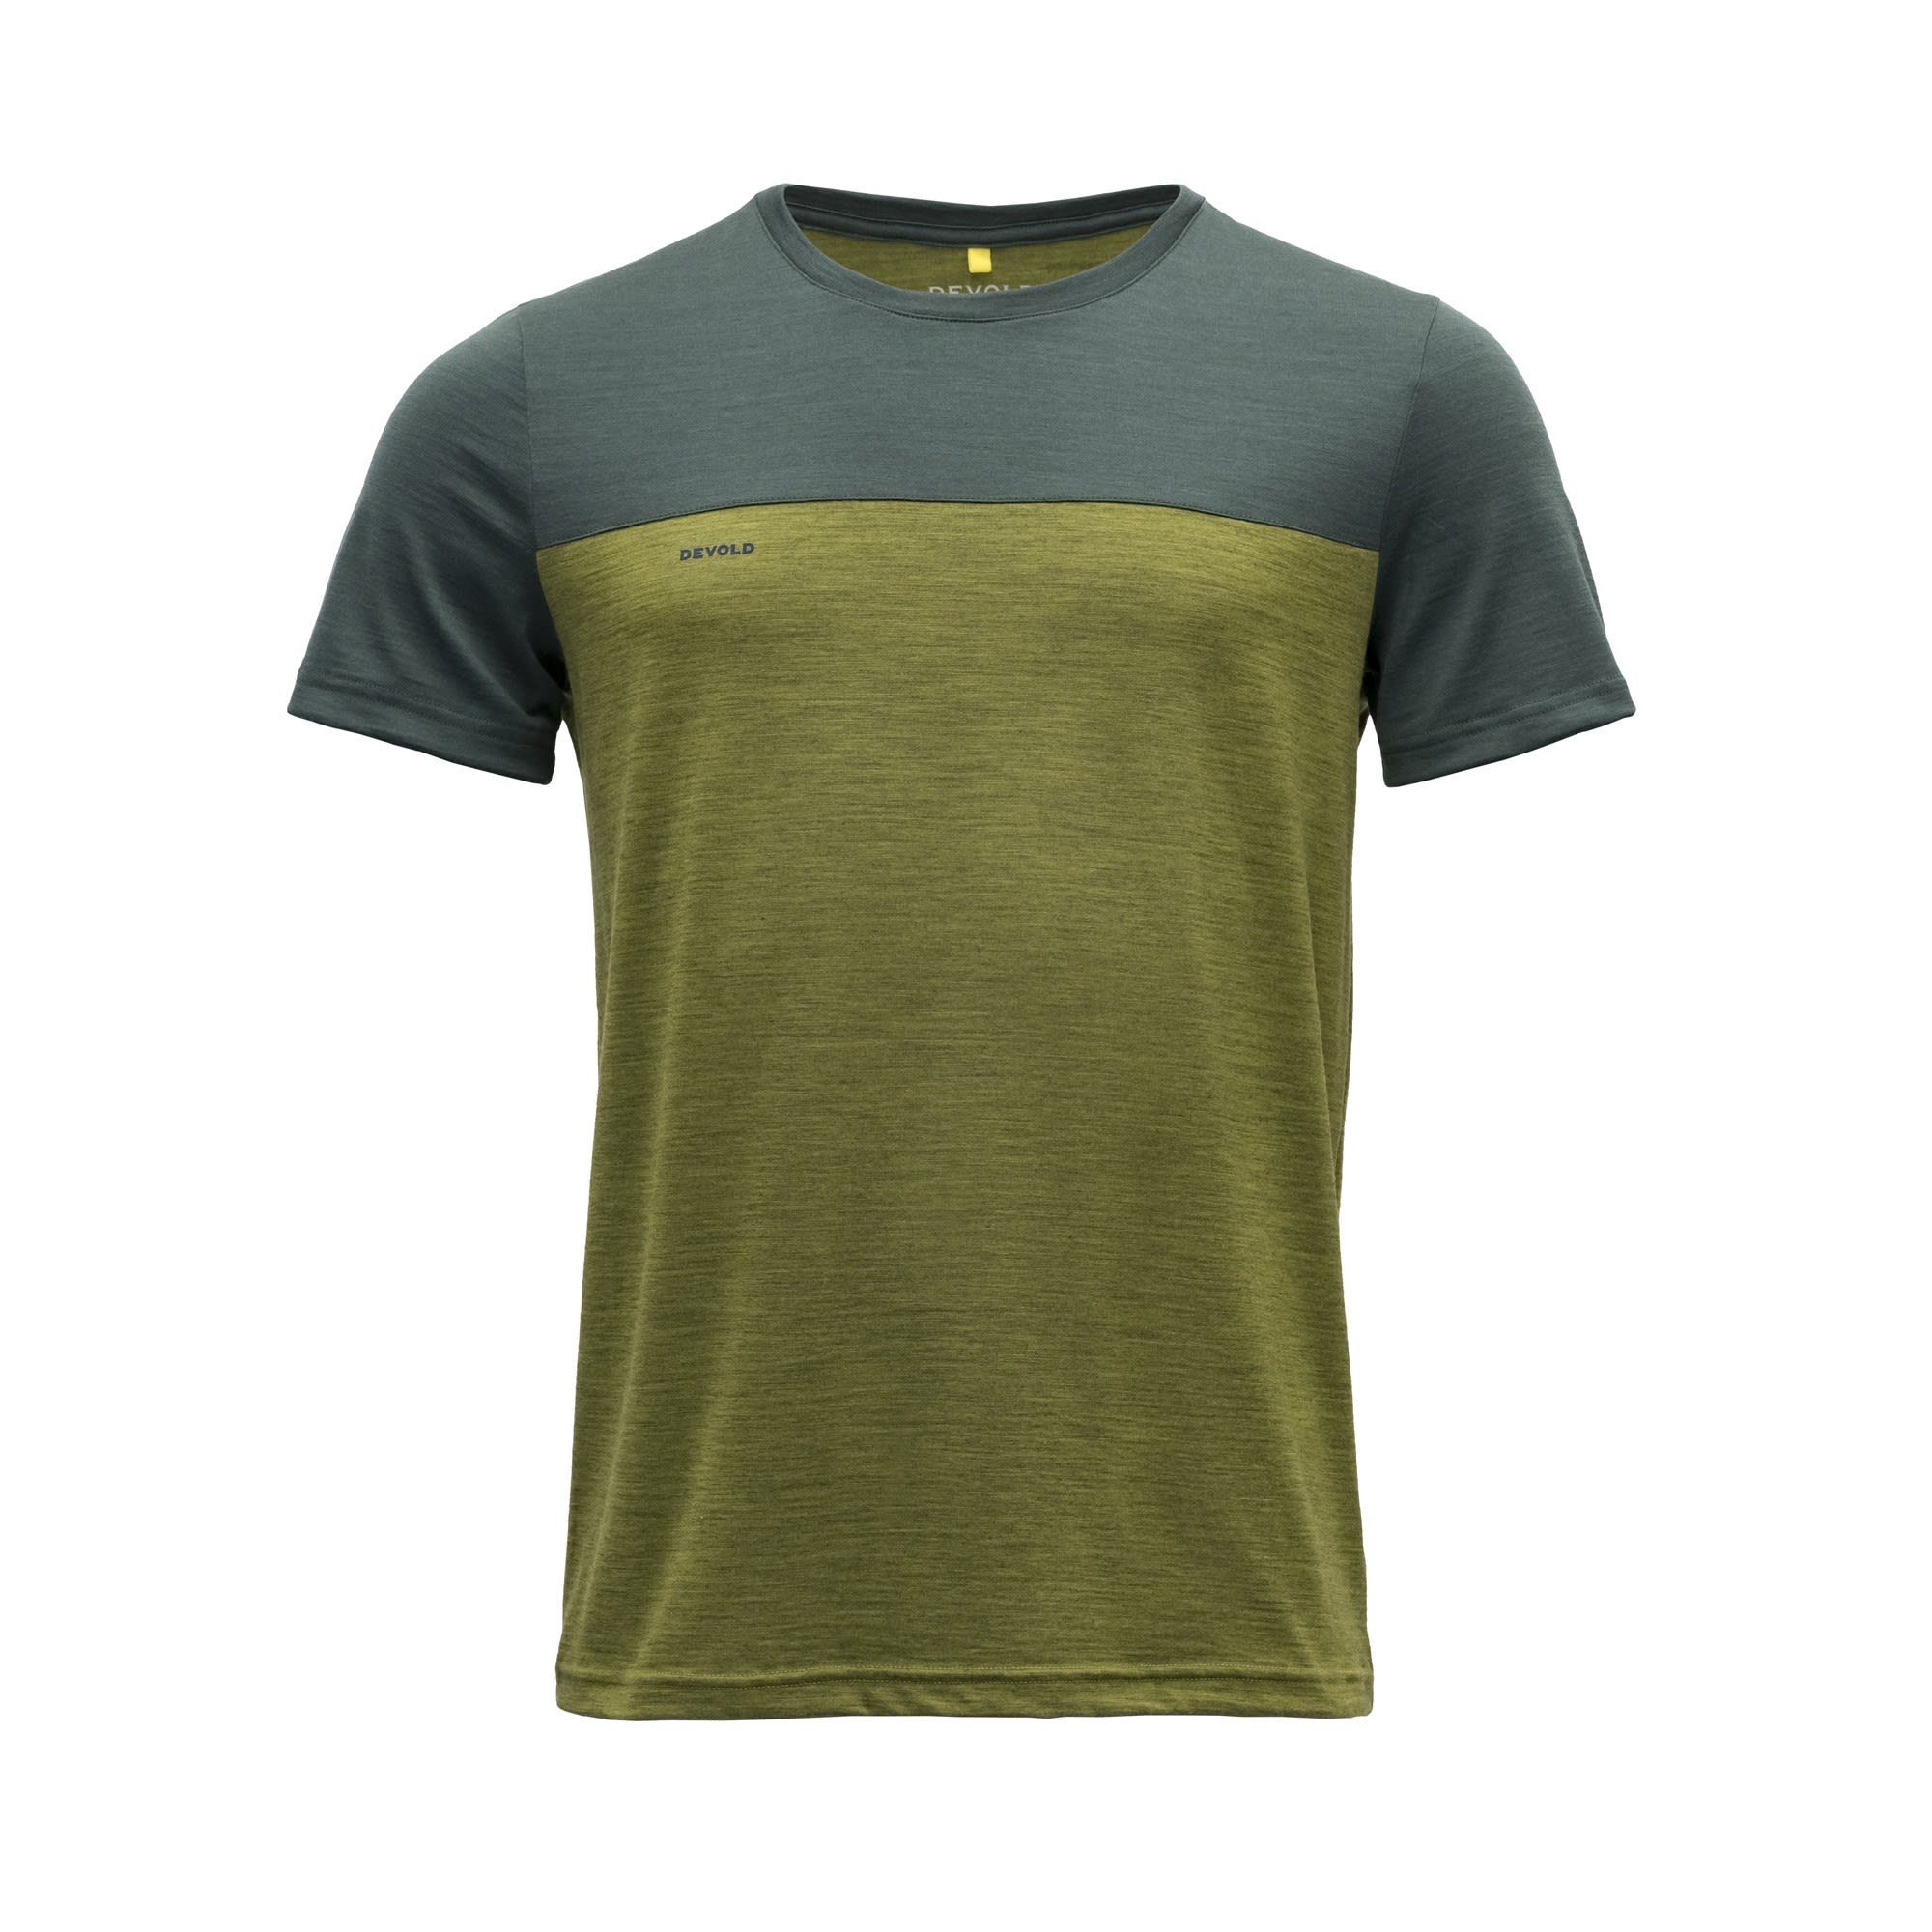 150 Devold Merino Devold M Tee T-Shirt Norang - Woods Green Melange Herren